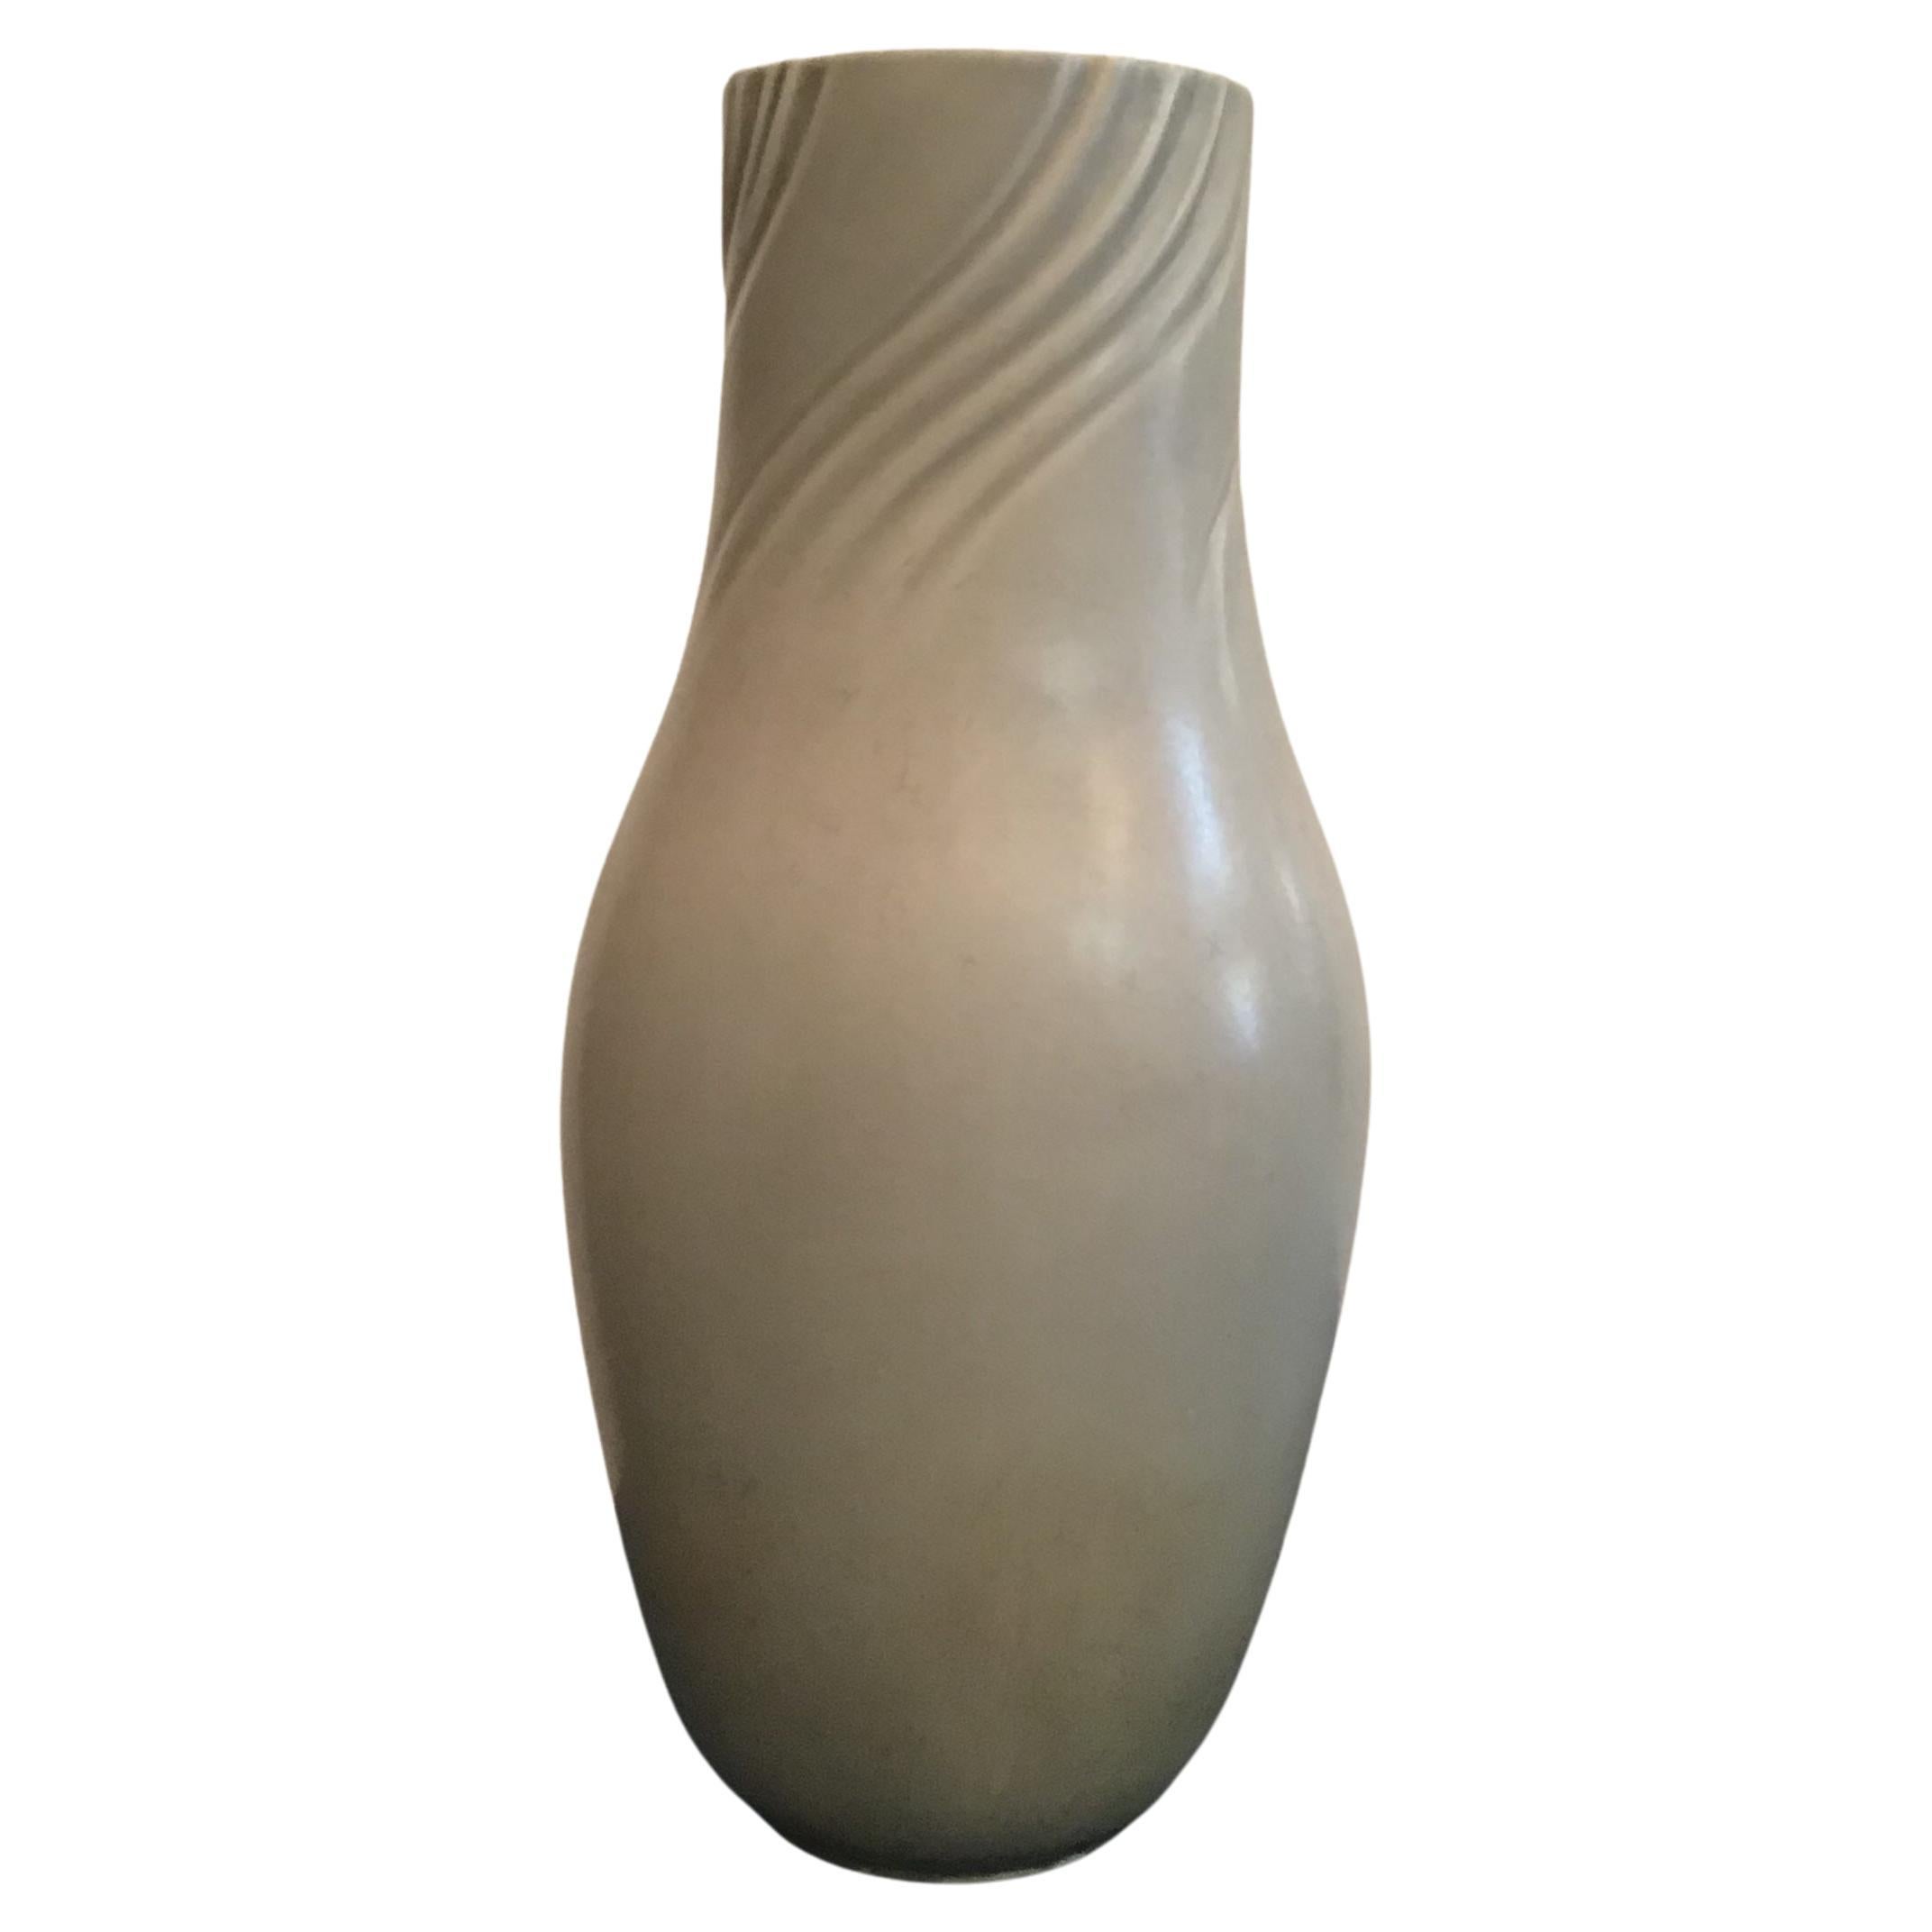 Richard Ginori Giovanni Gariboldi Vase aus Keramik, 1950, Italien